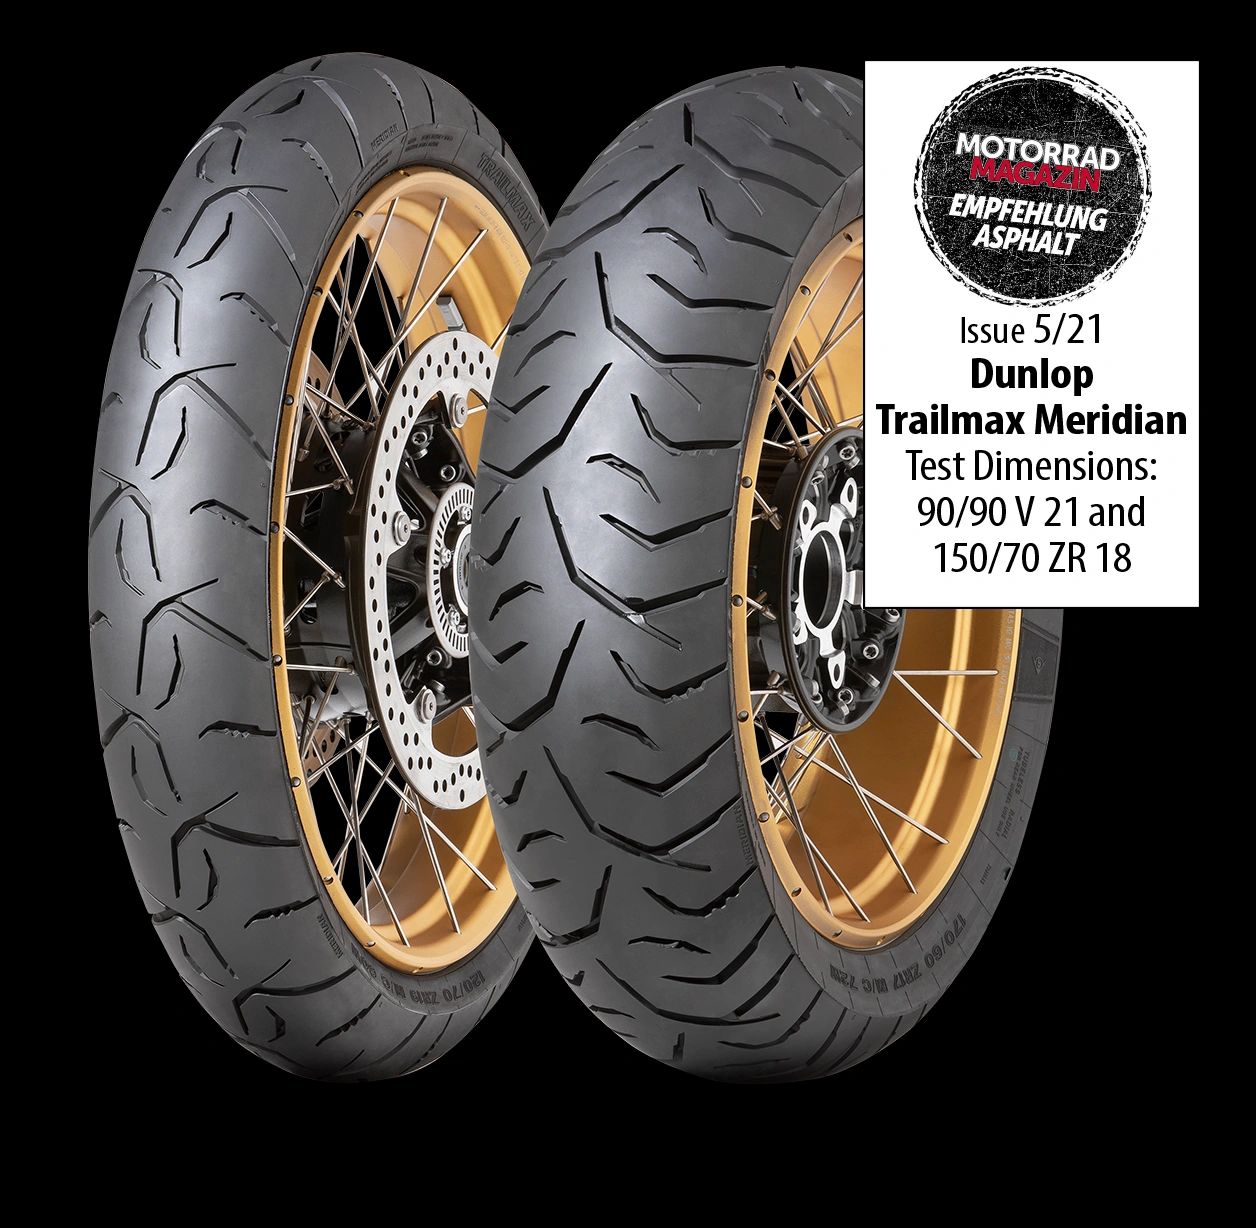 Motorrad Magazin names Dunlop Trailmax Meridian 'asphalt emperor'